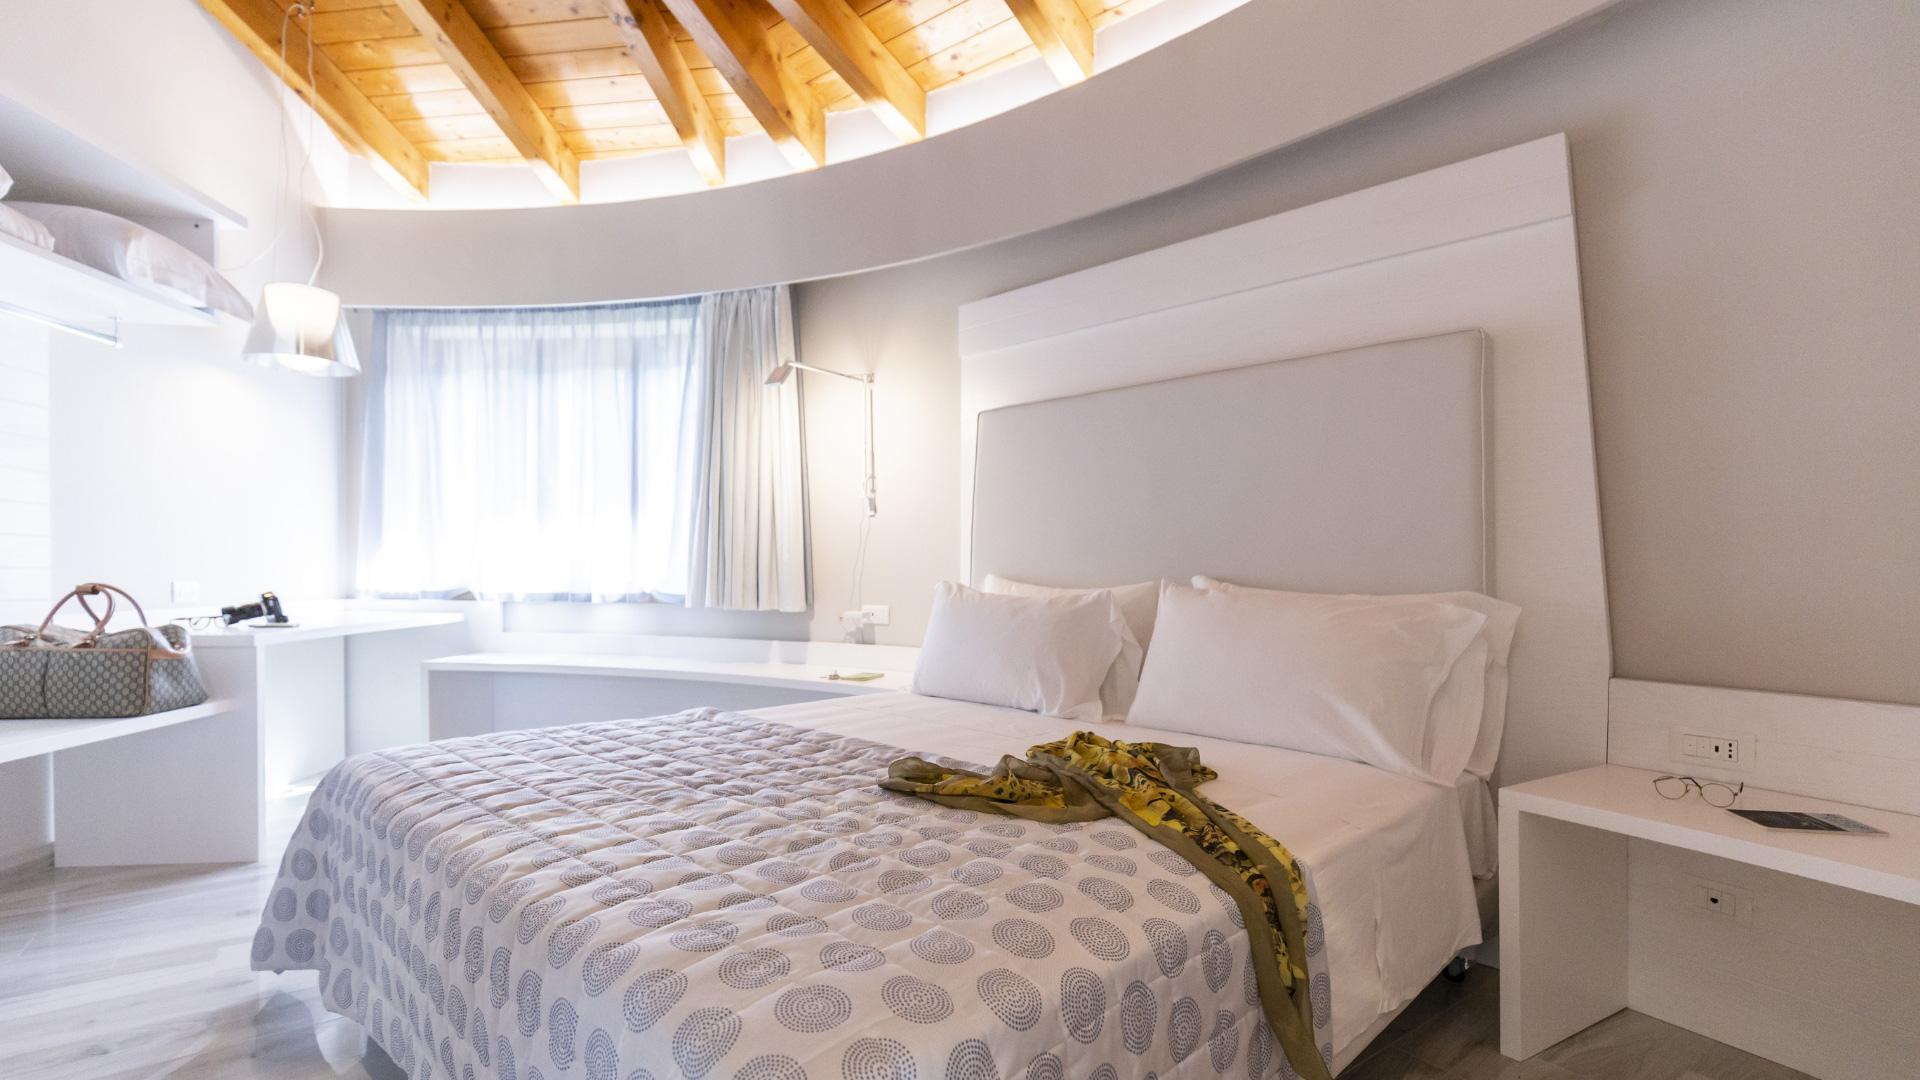 Chambre moderne avec lit double, plafond en bois et mobilier blanc.